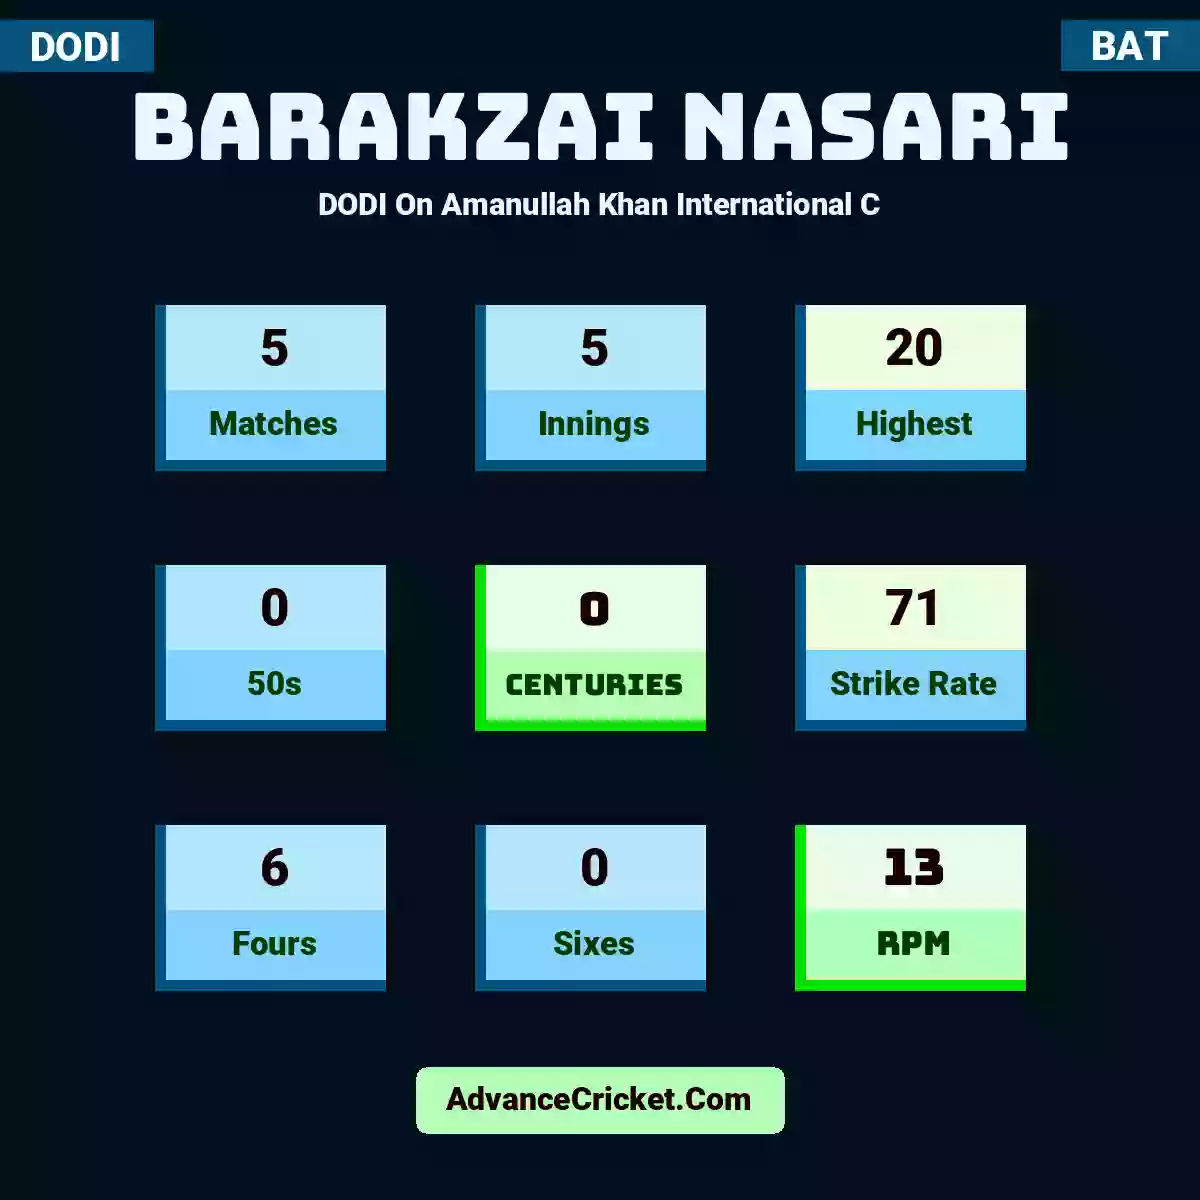 Barakzai Nasari DODI  On Amanullah Khan International C, Barakzai Nasari played 5 matches, scored 20 runs as highest, 0 half-centuries, and 0 centuries, with a strike rate of 71. B.Nasari hit 6 fours and 0 sixes, with an RPM of 13.